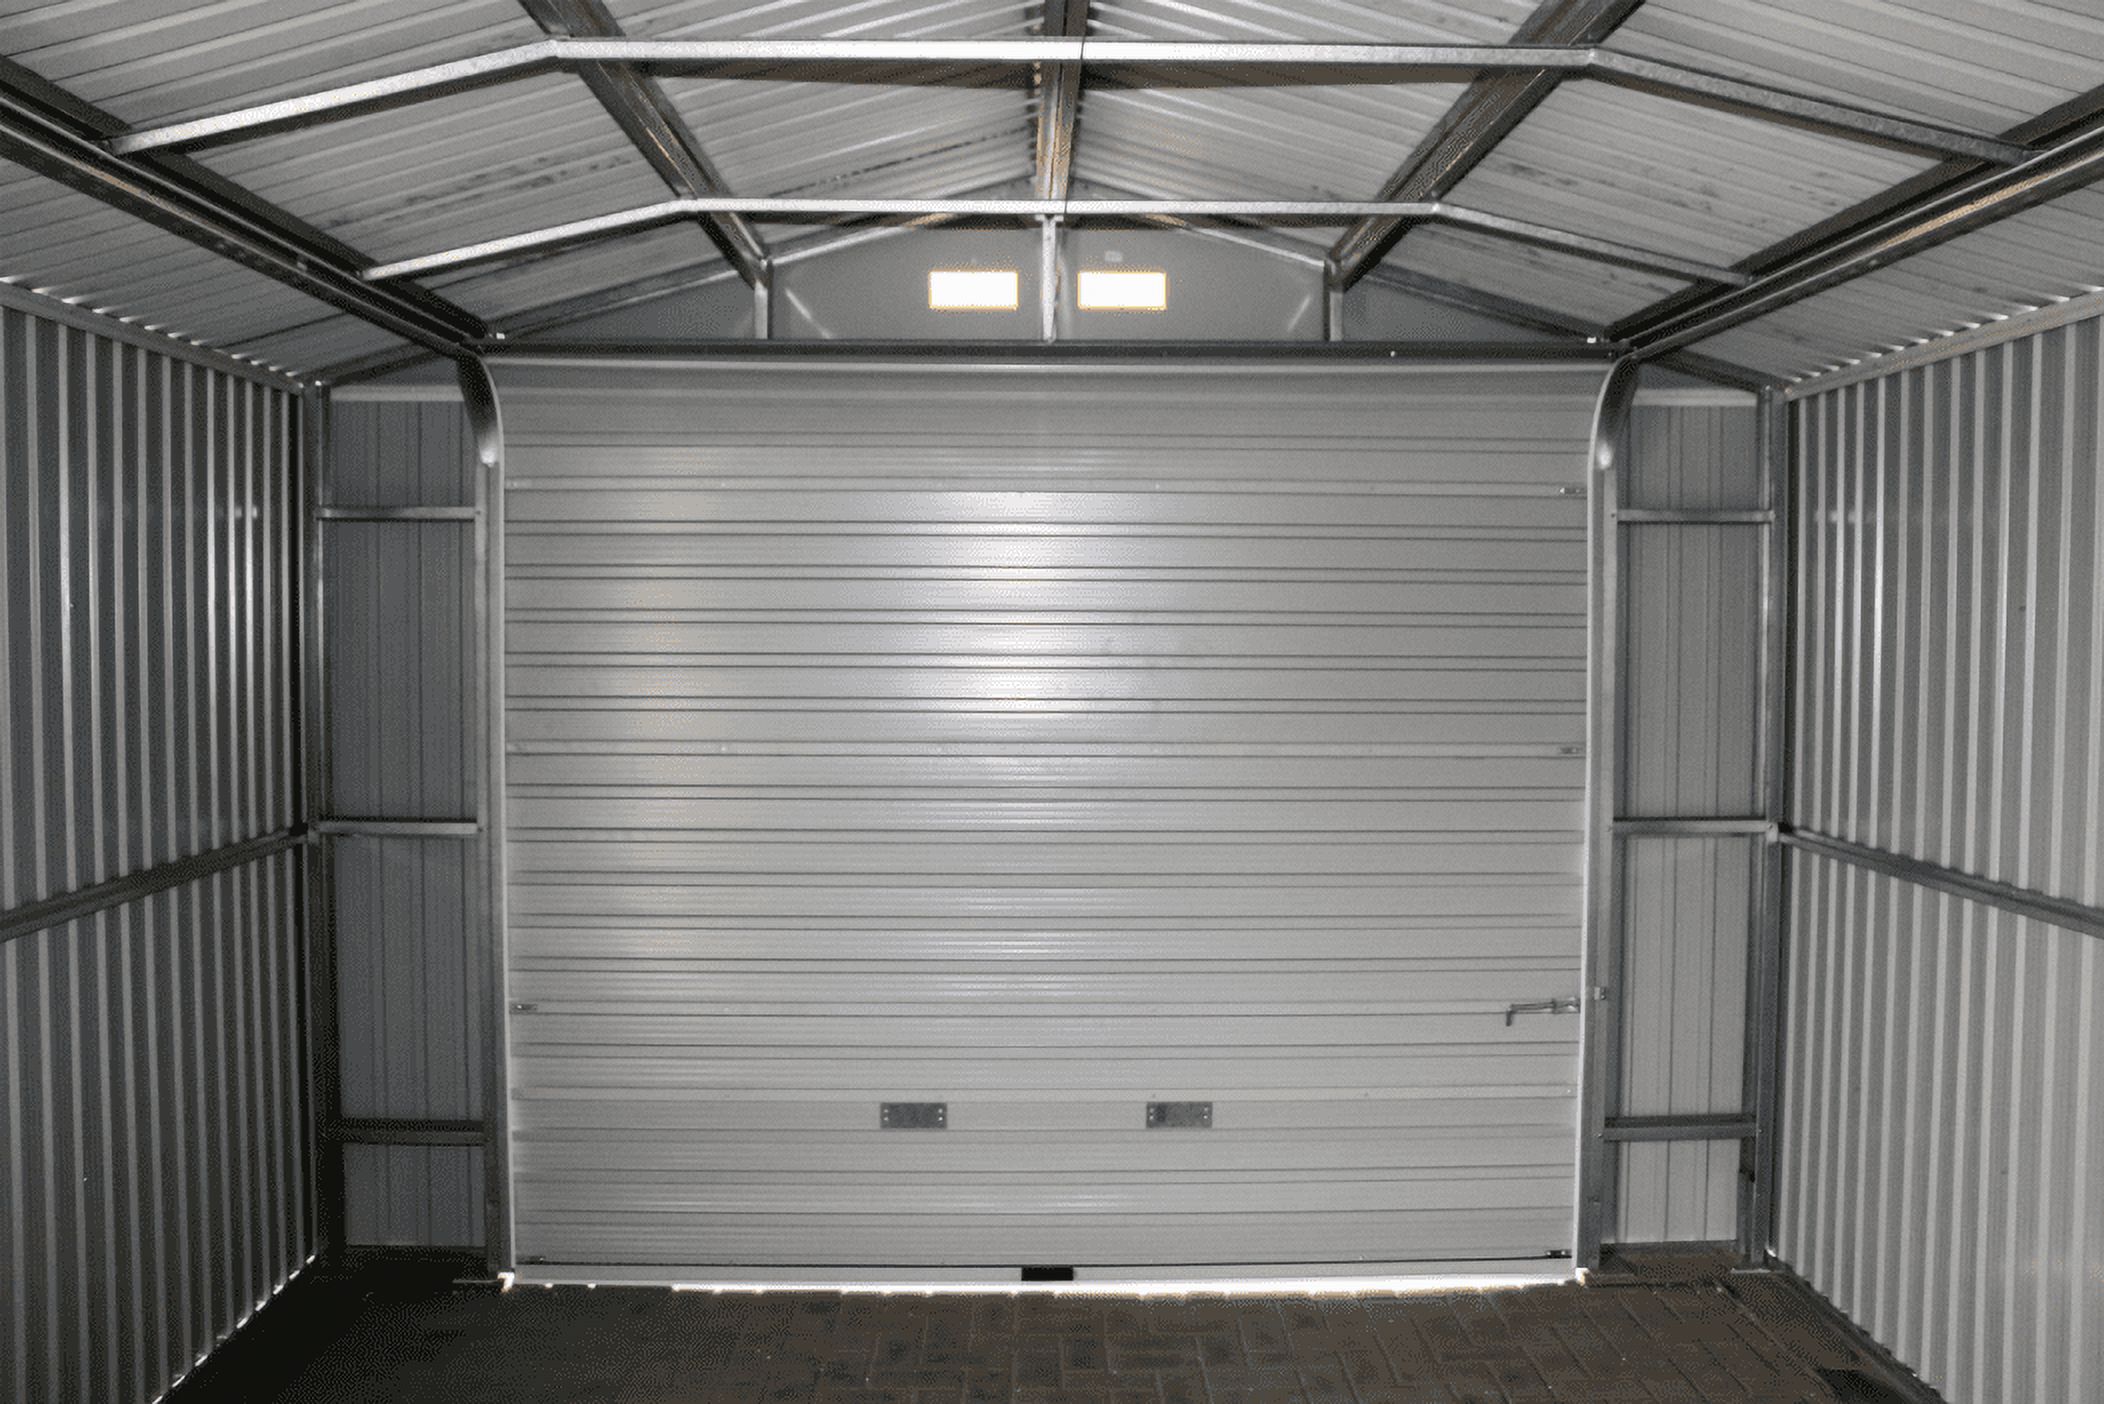 Duramax 55151 Metal Garage 12'x26' Metal Storage Shed Dark Gray with White Trim - image 5 of 5